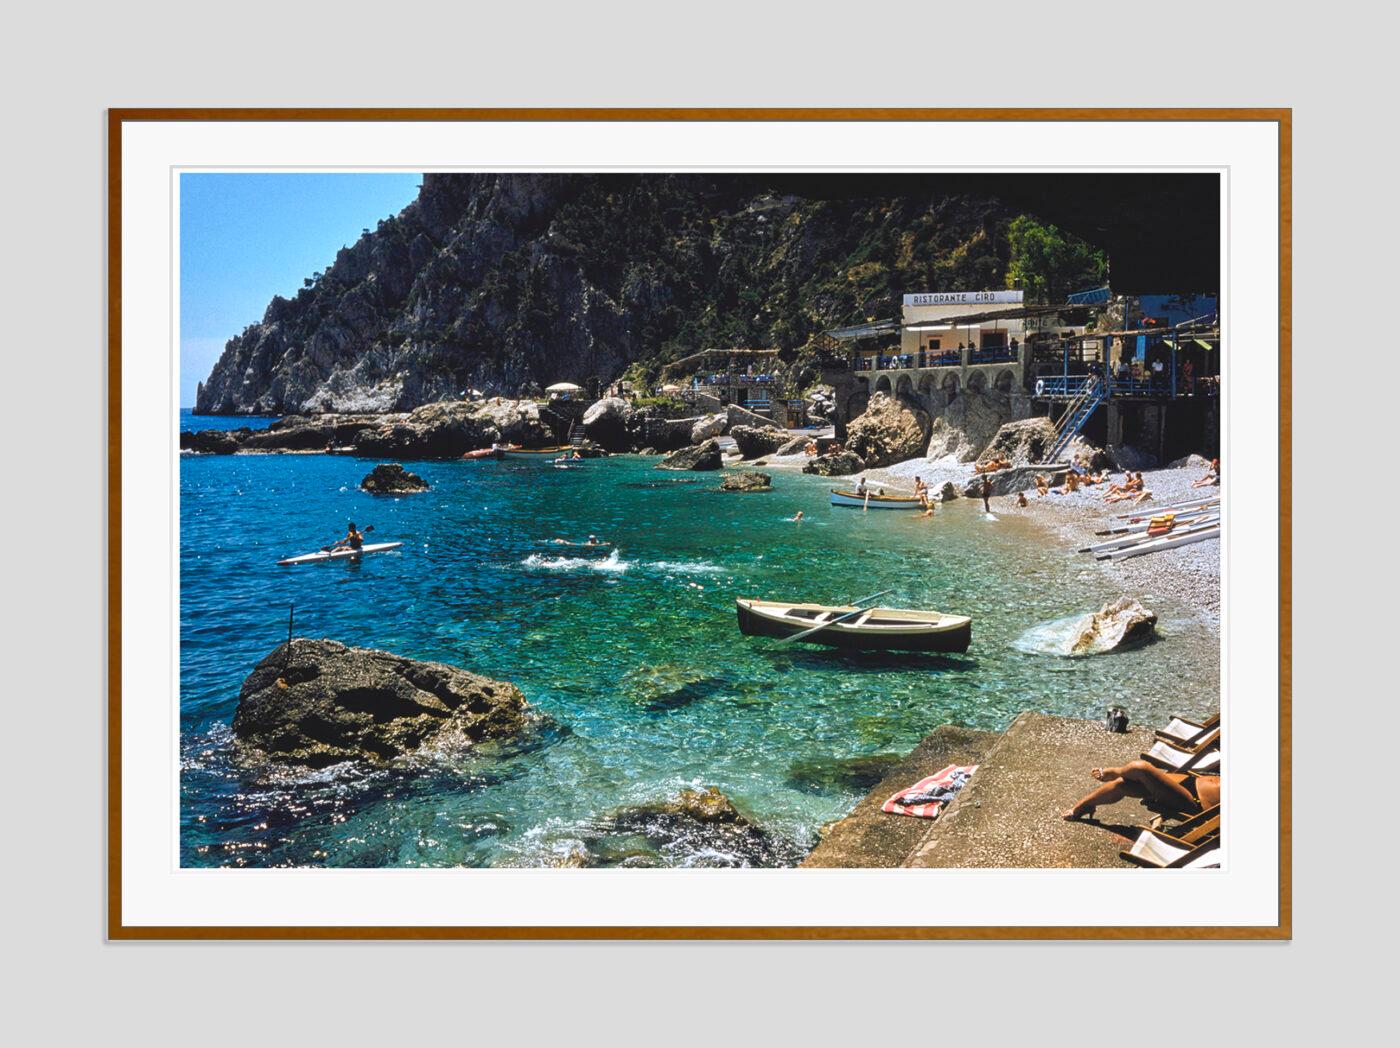 Ein Strand in Capri

1959

Eine Strandszene auf der Insel Capri, Italien, 1959. 

von Toni Frissell

60 x 40